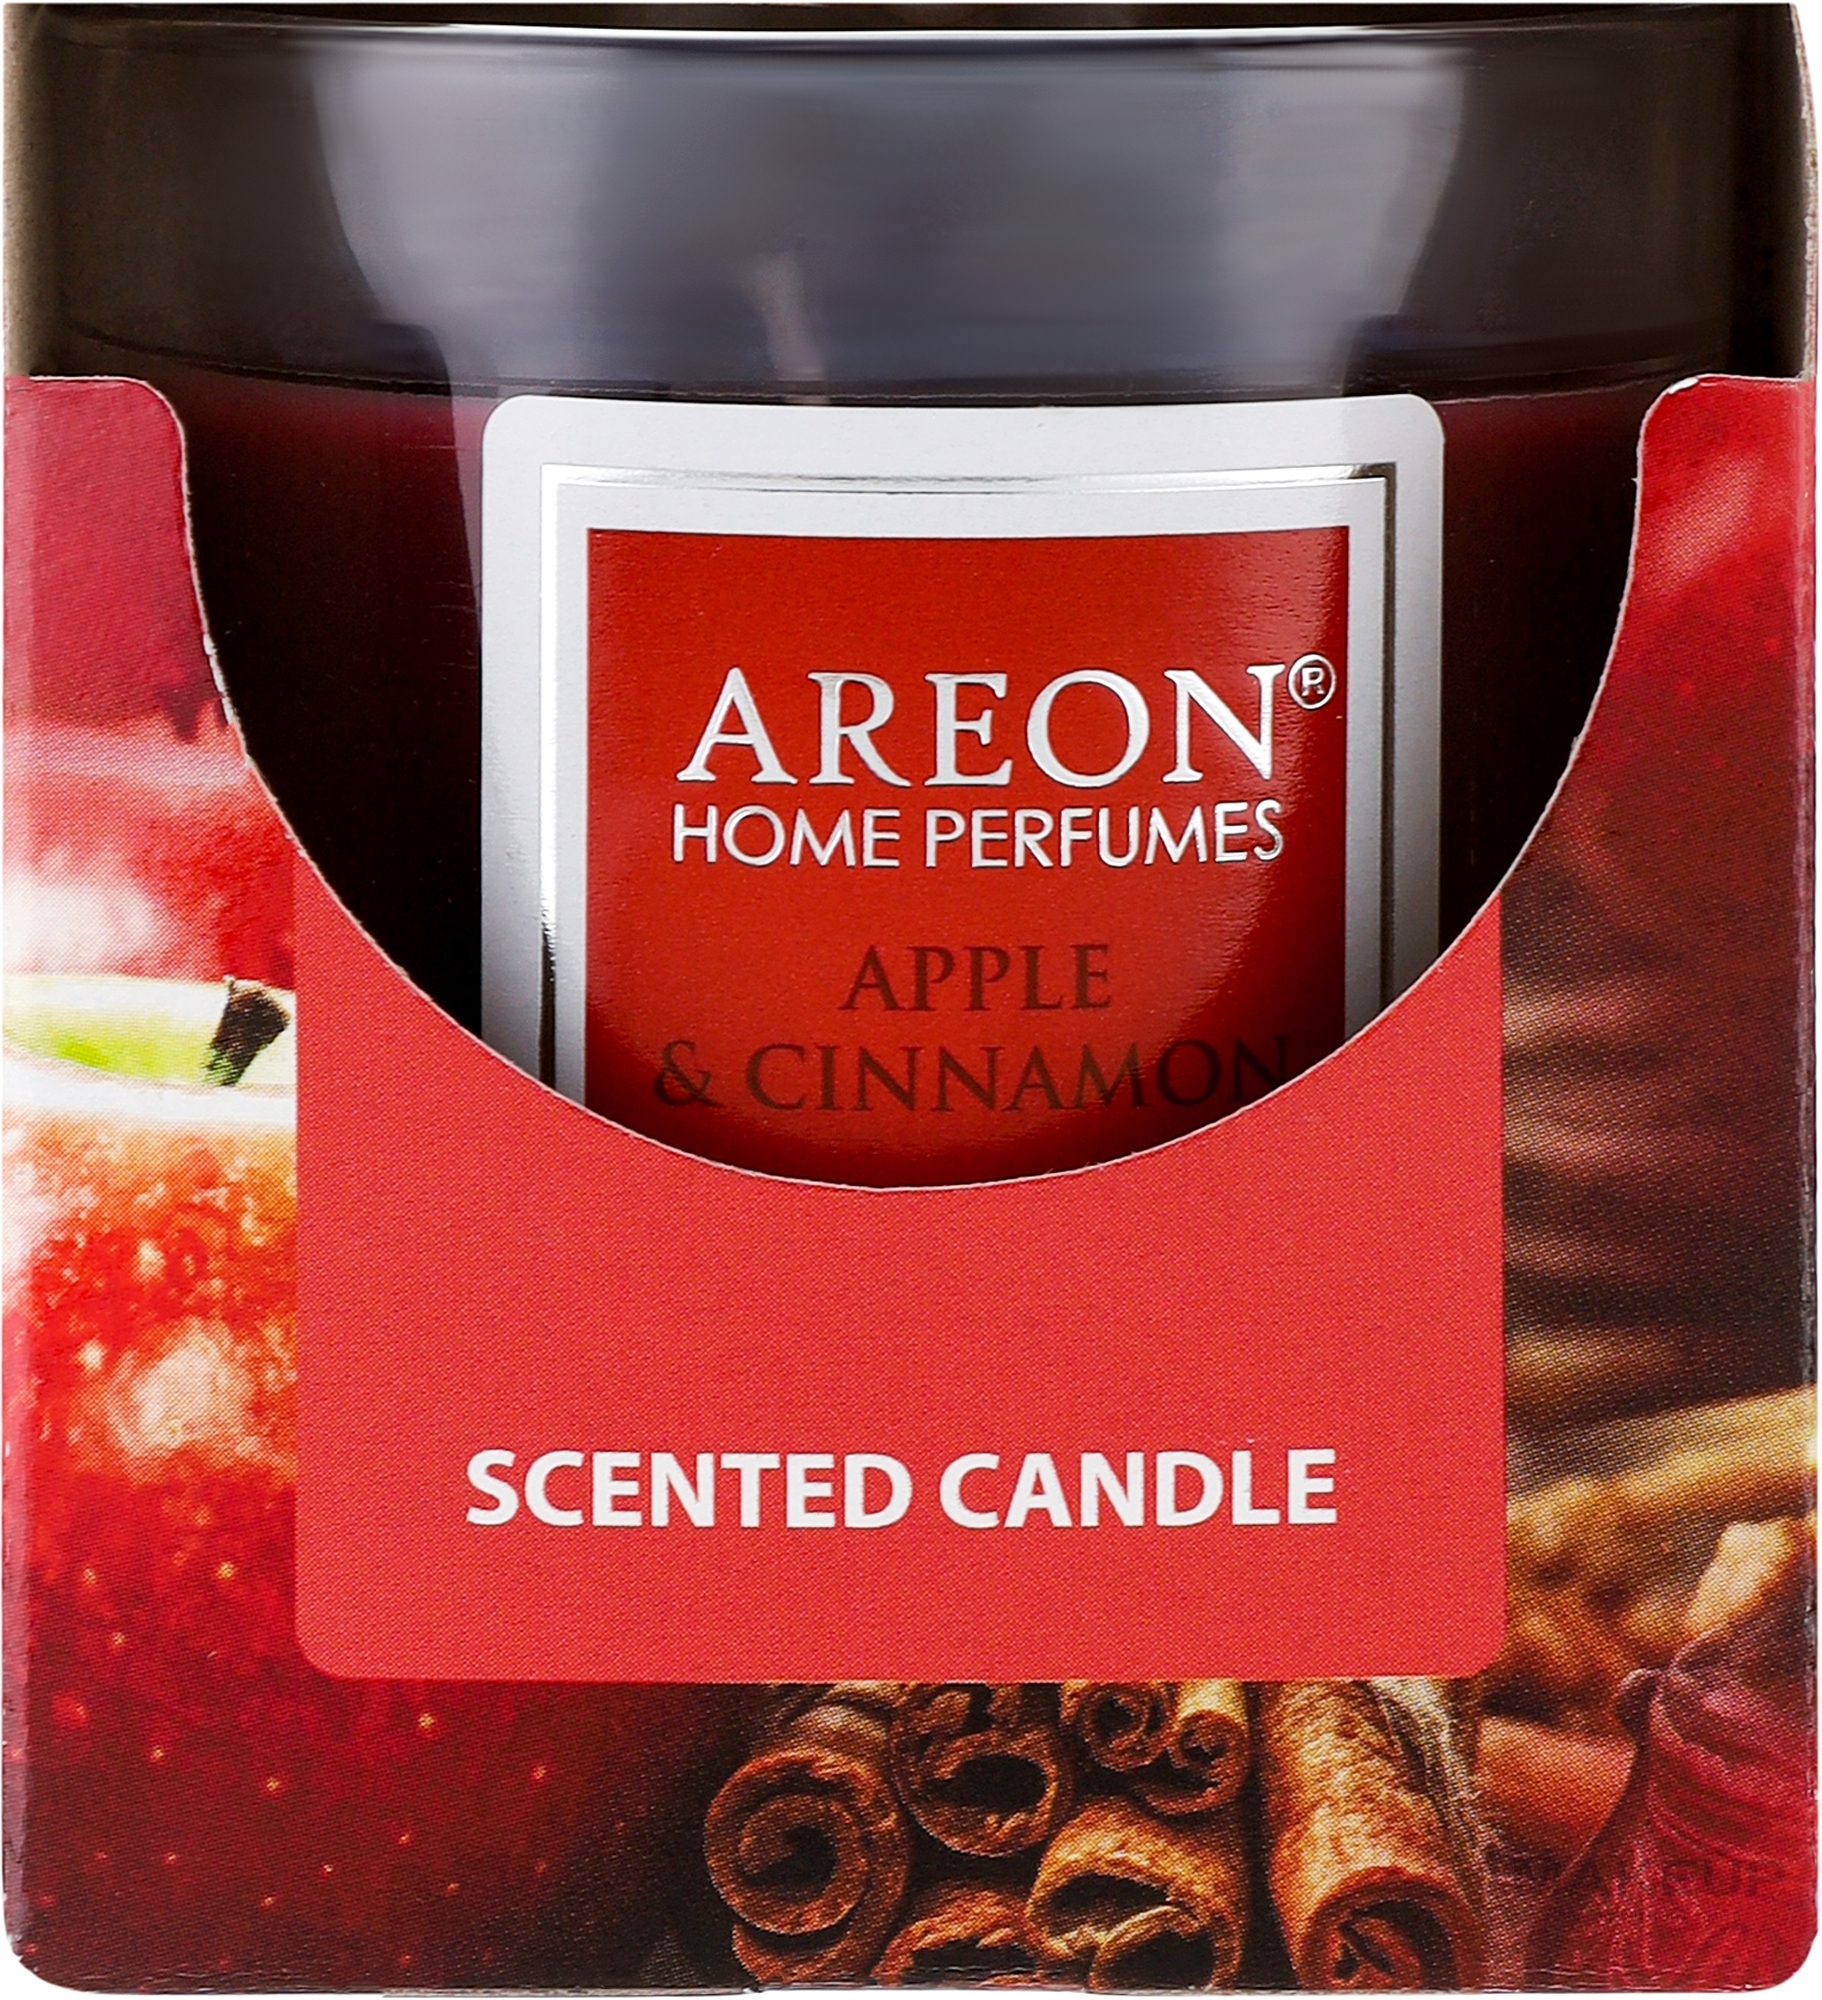 Świeca zapachowa w szklance Apple & Cinnamon - Areon Home Perfumes Apple & Cinnamon Scented Candle — Zdjęcie 120 g